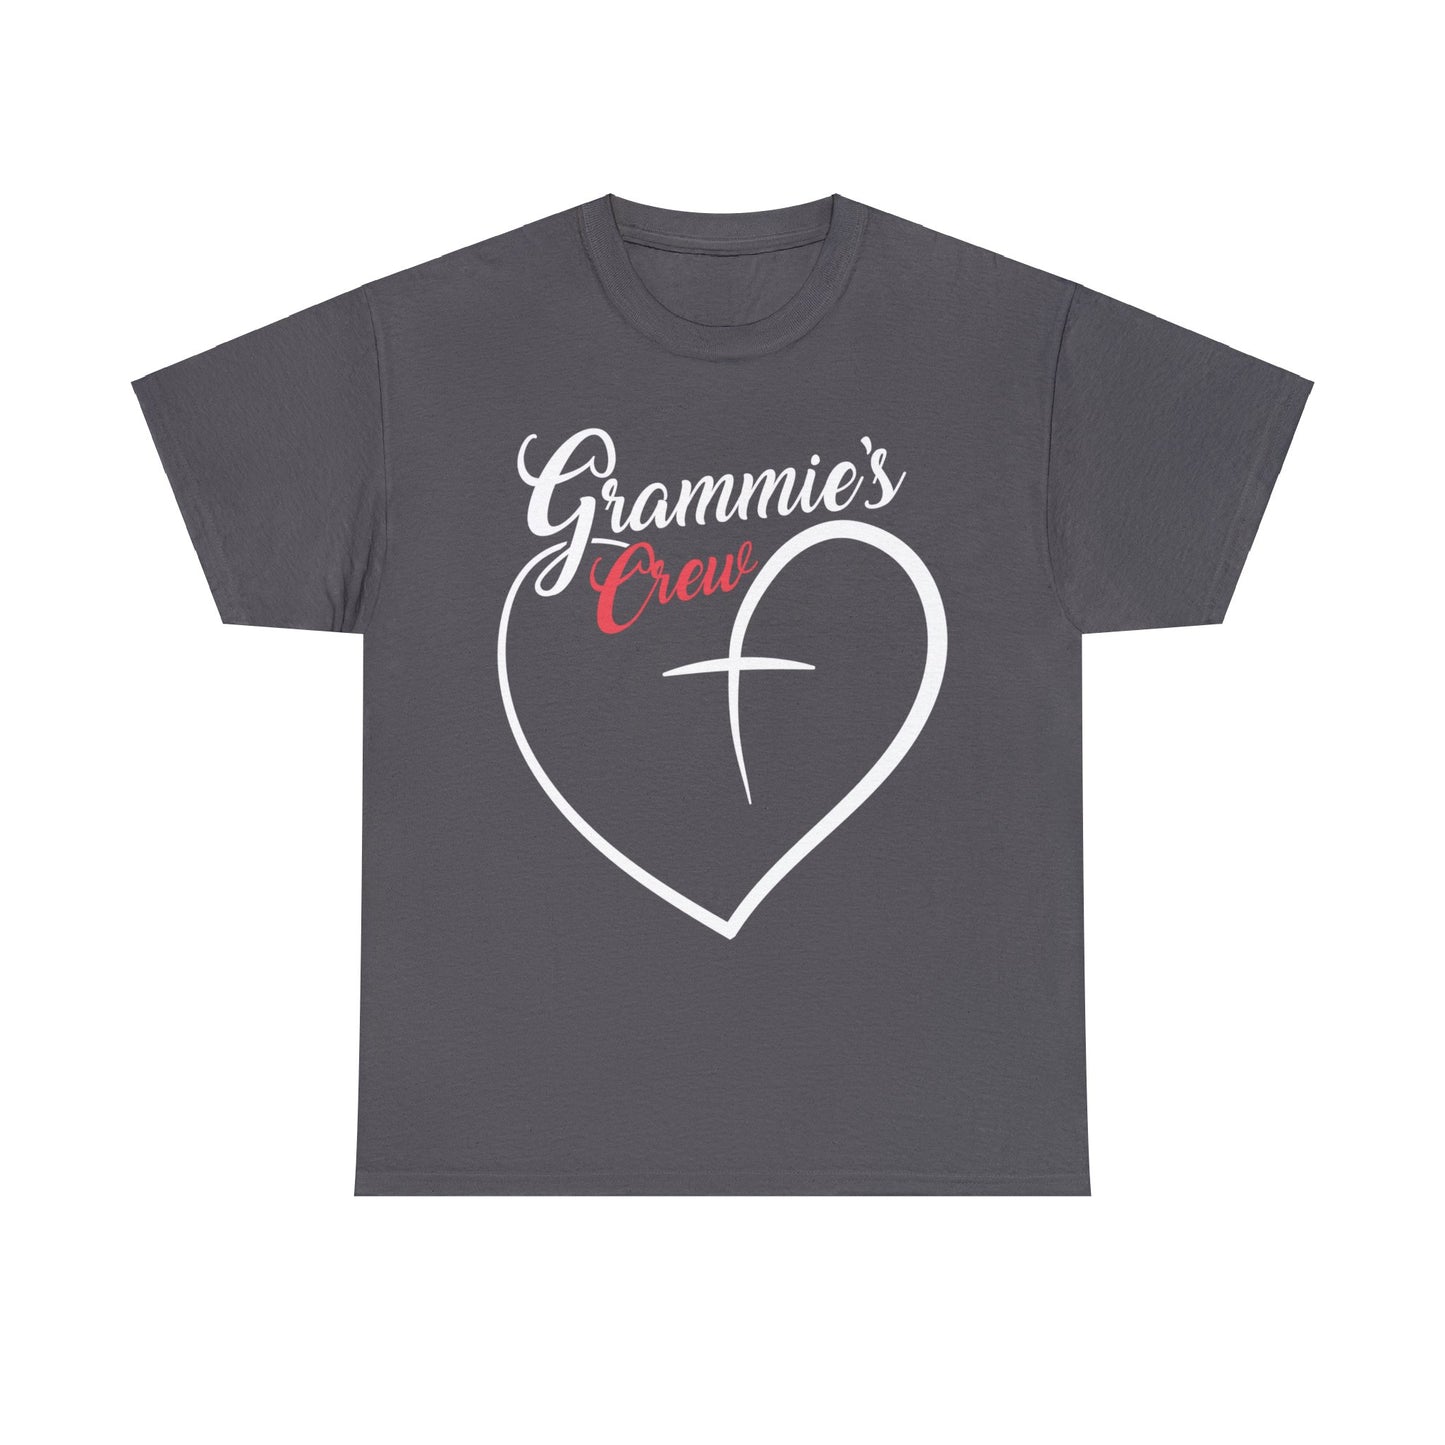 Grammies Crew Shirt, Grandma Shirt, Gift for Grammy, Best Grammy Ever Shirt, Mother's Day Shirt